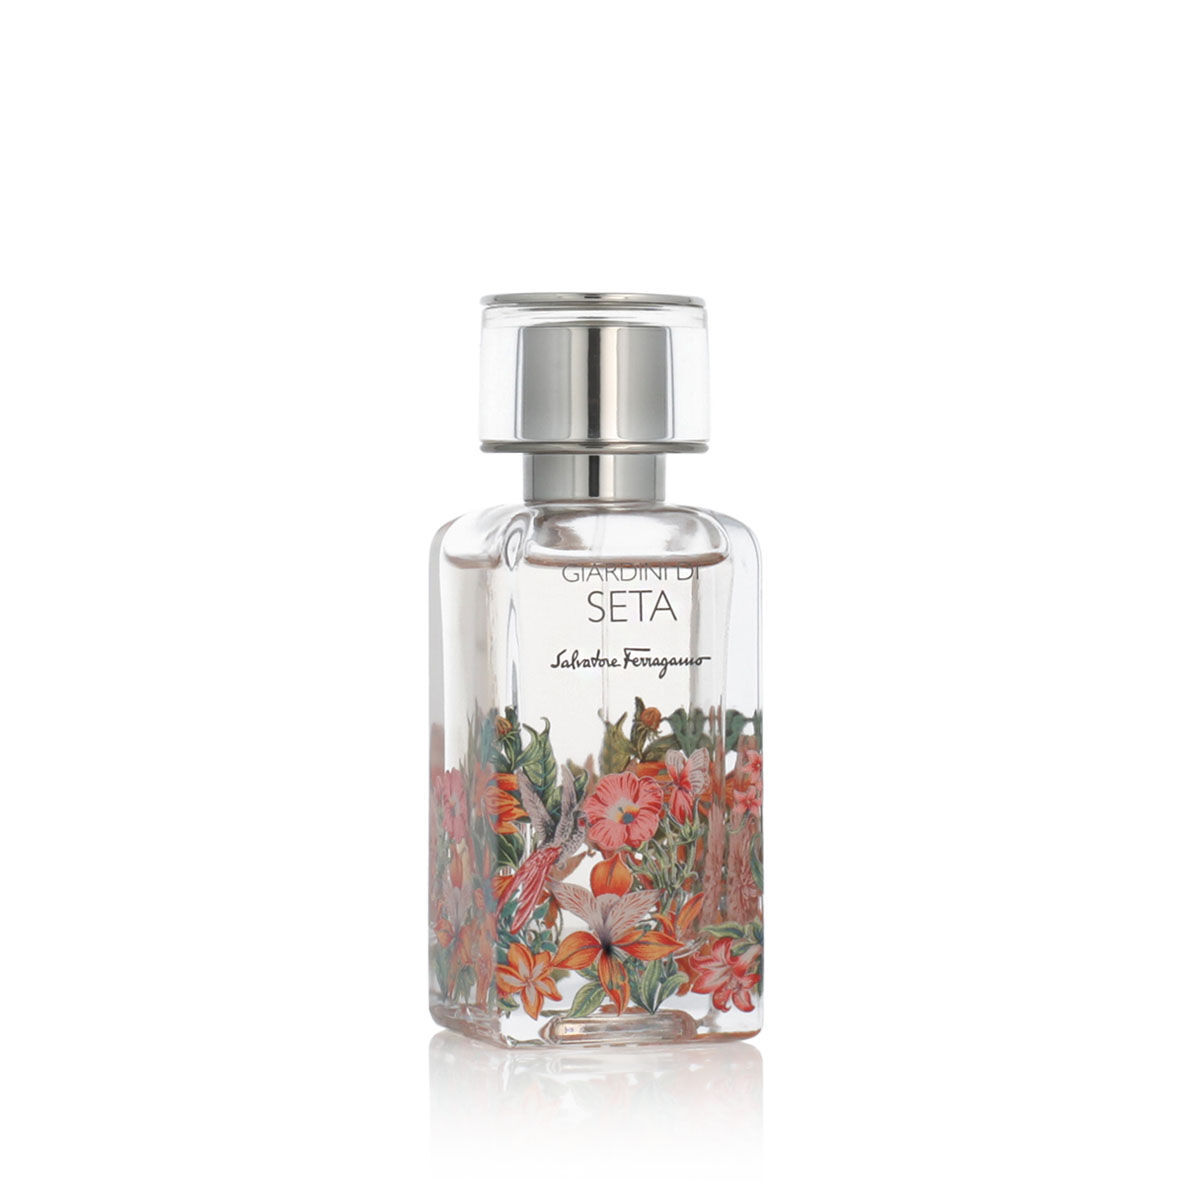 Parfum Unisex Salvatore Ferragamo EDP Giardini di Seta (50 ml)